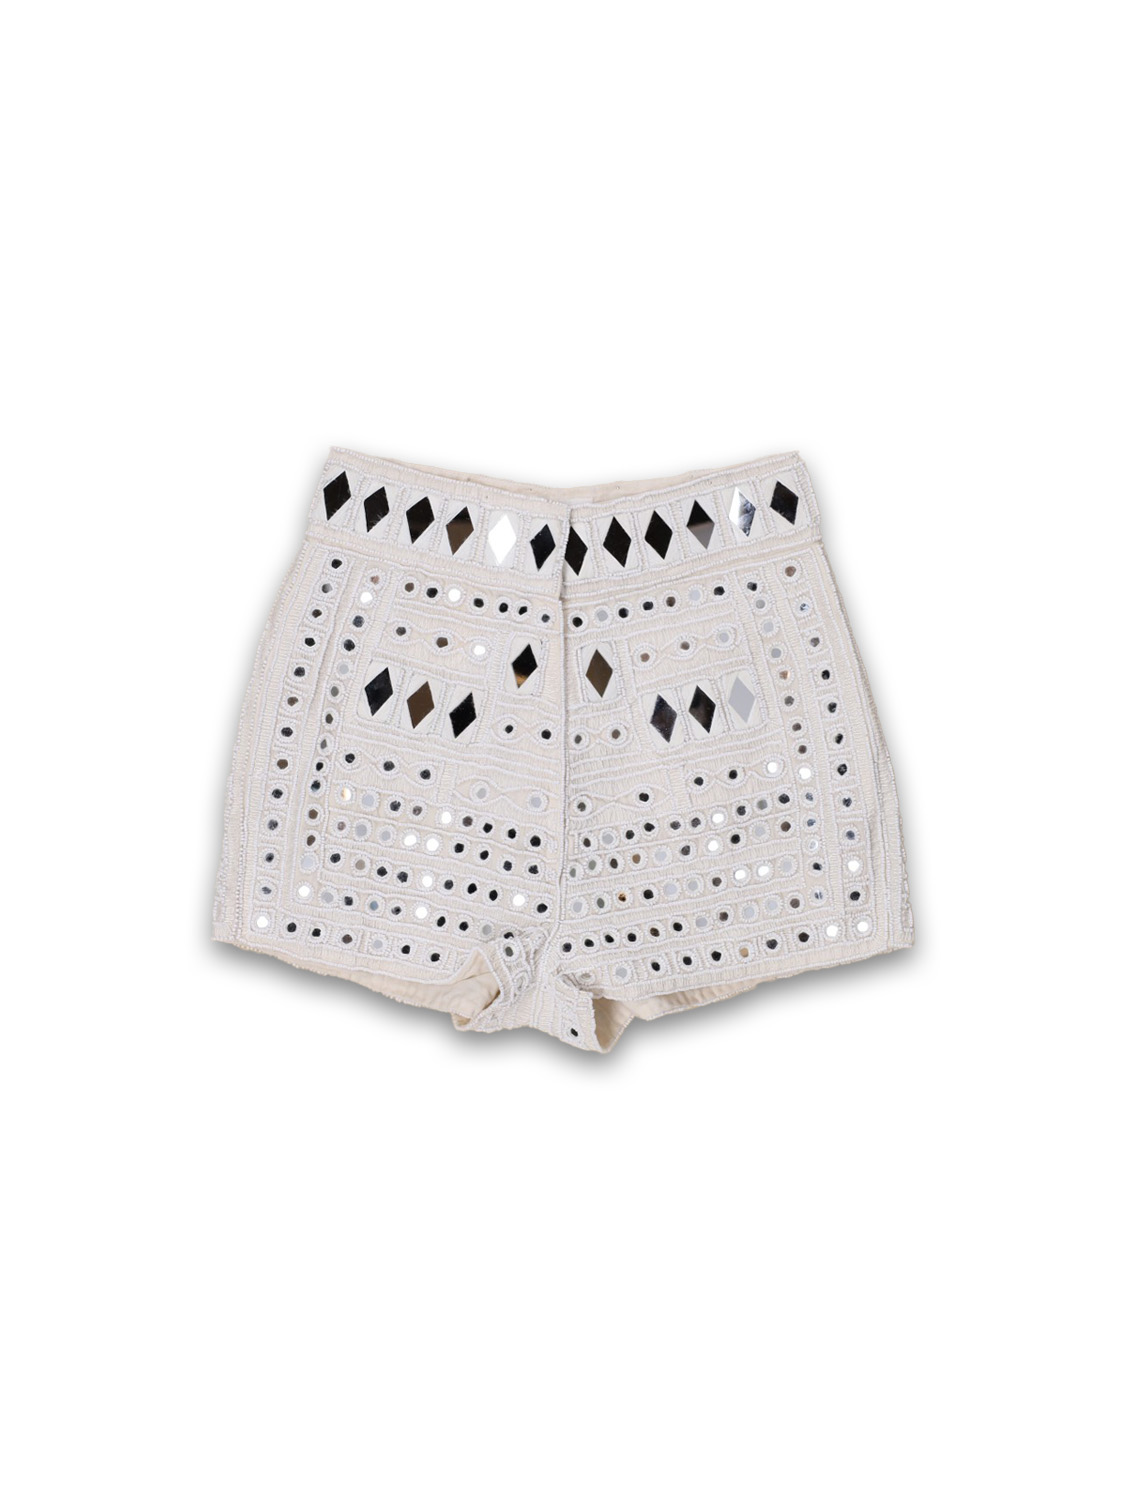 Antik Batik Mahani shorts with mirror details  creme 38